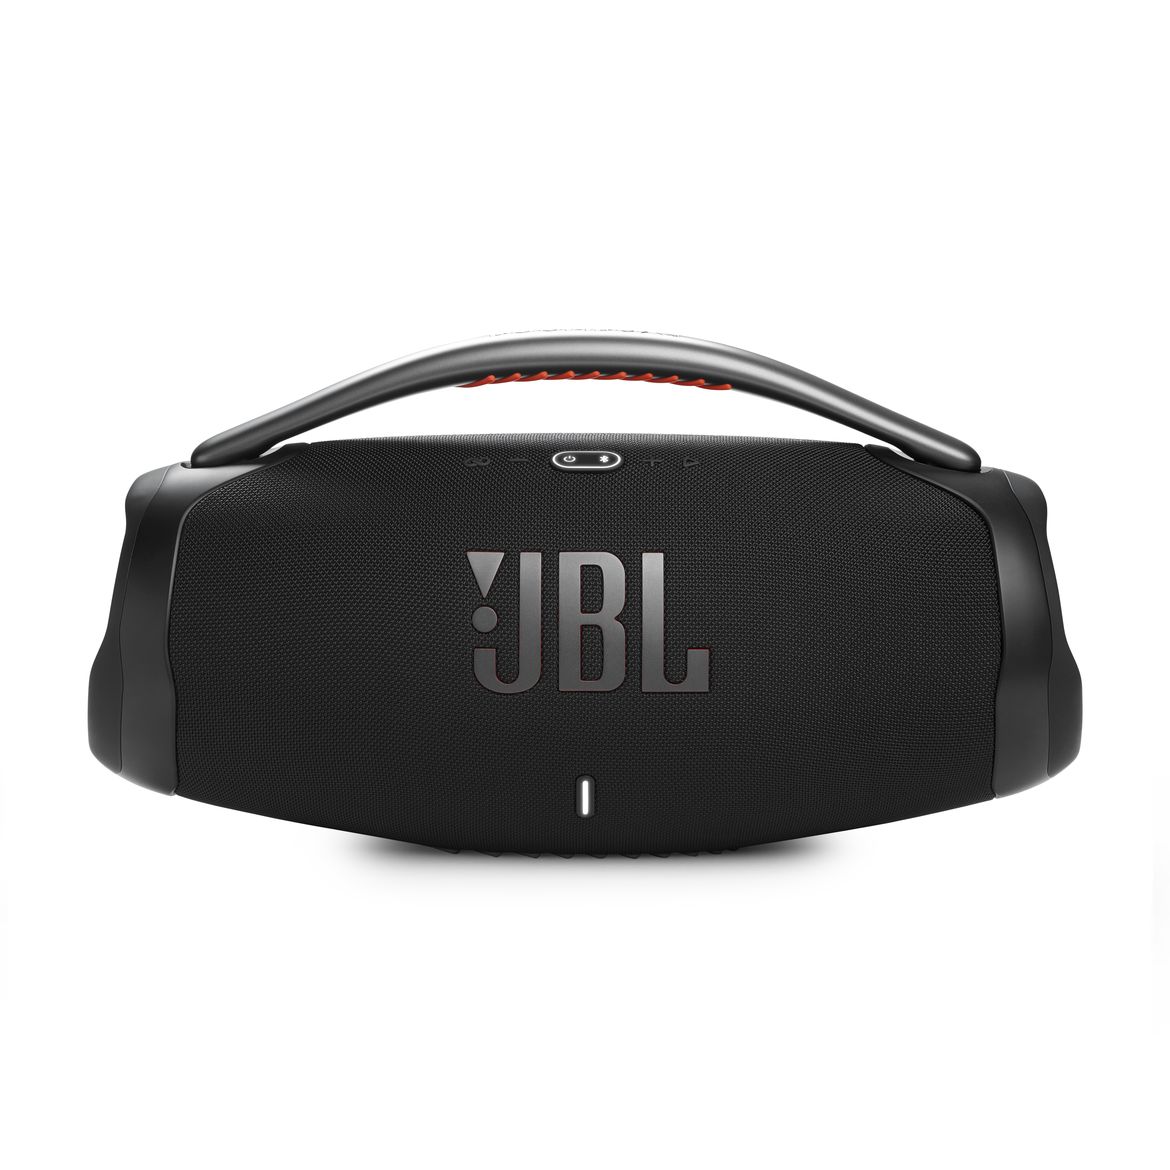 oferta: JBL BOOMBOX 3